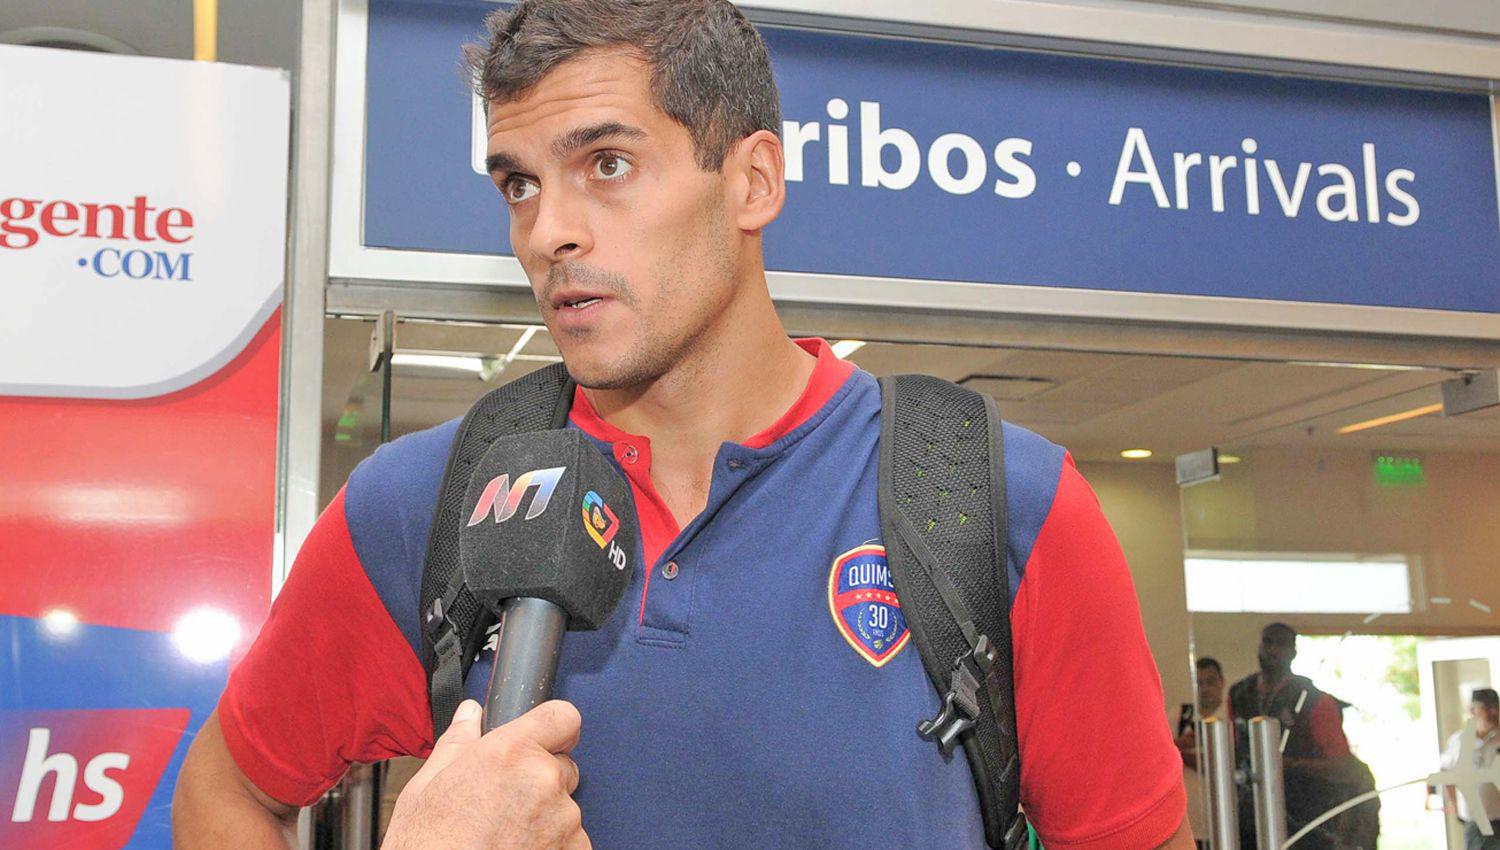 Mainoldi invitó al p�blico santiagueño a apoyar al equipo mañana cuando se juegue el segundo
punto de la serie entre Quimsa y San Lorenzo en el estadio Ciudad